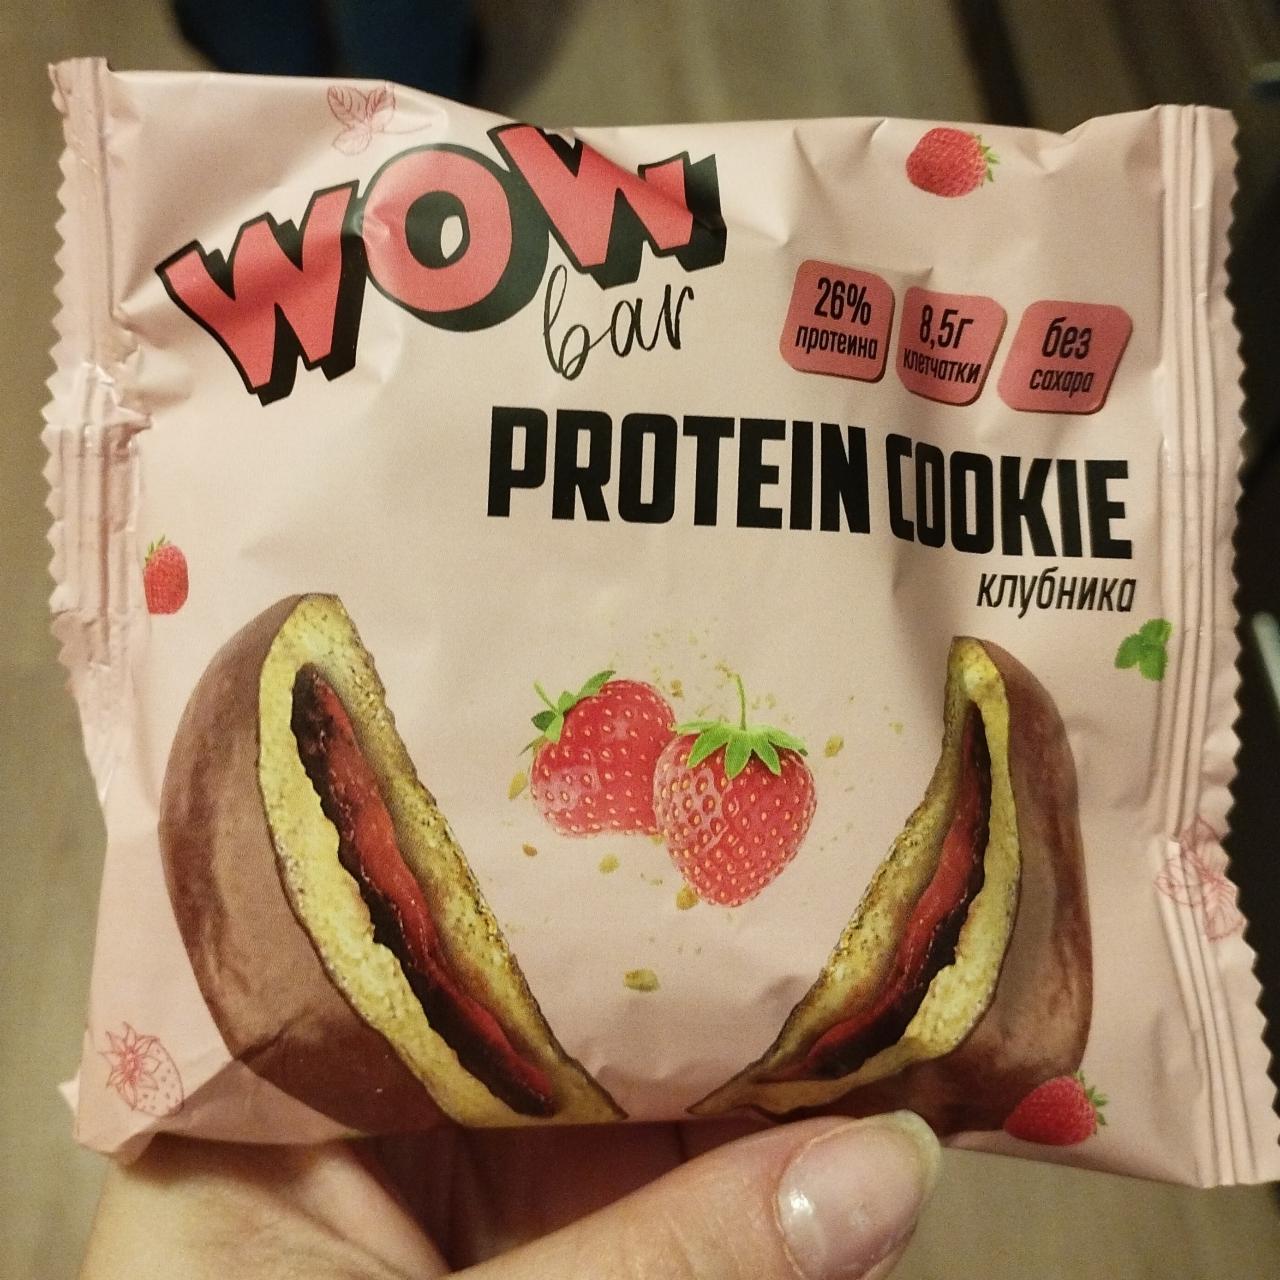 Фото - протеиновые печенье с клубникой Wow bar